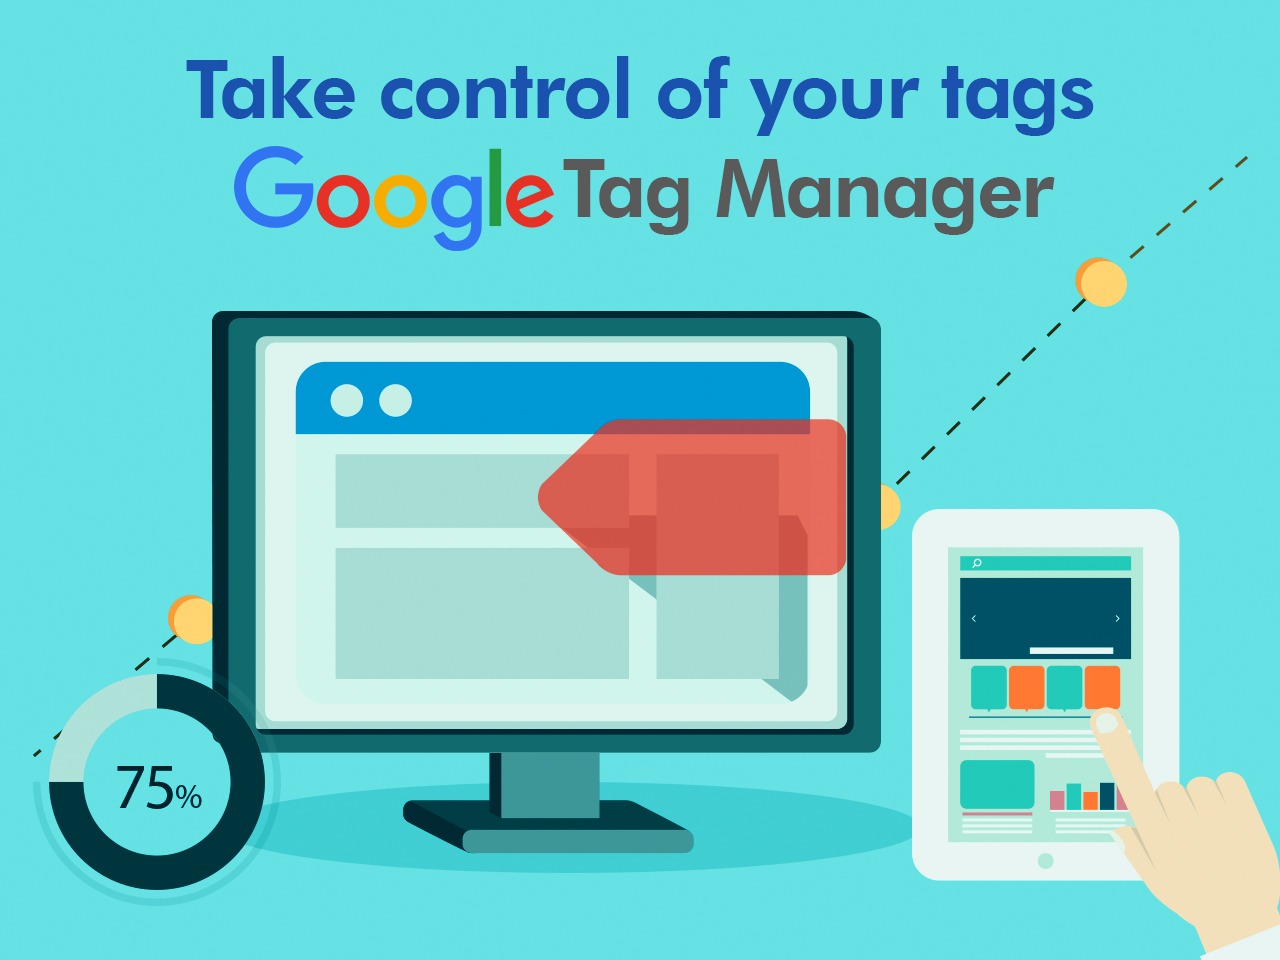 Cách sử dụng Google Tag Manager để theo dõi các sự kiện trên website?
